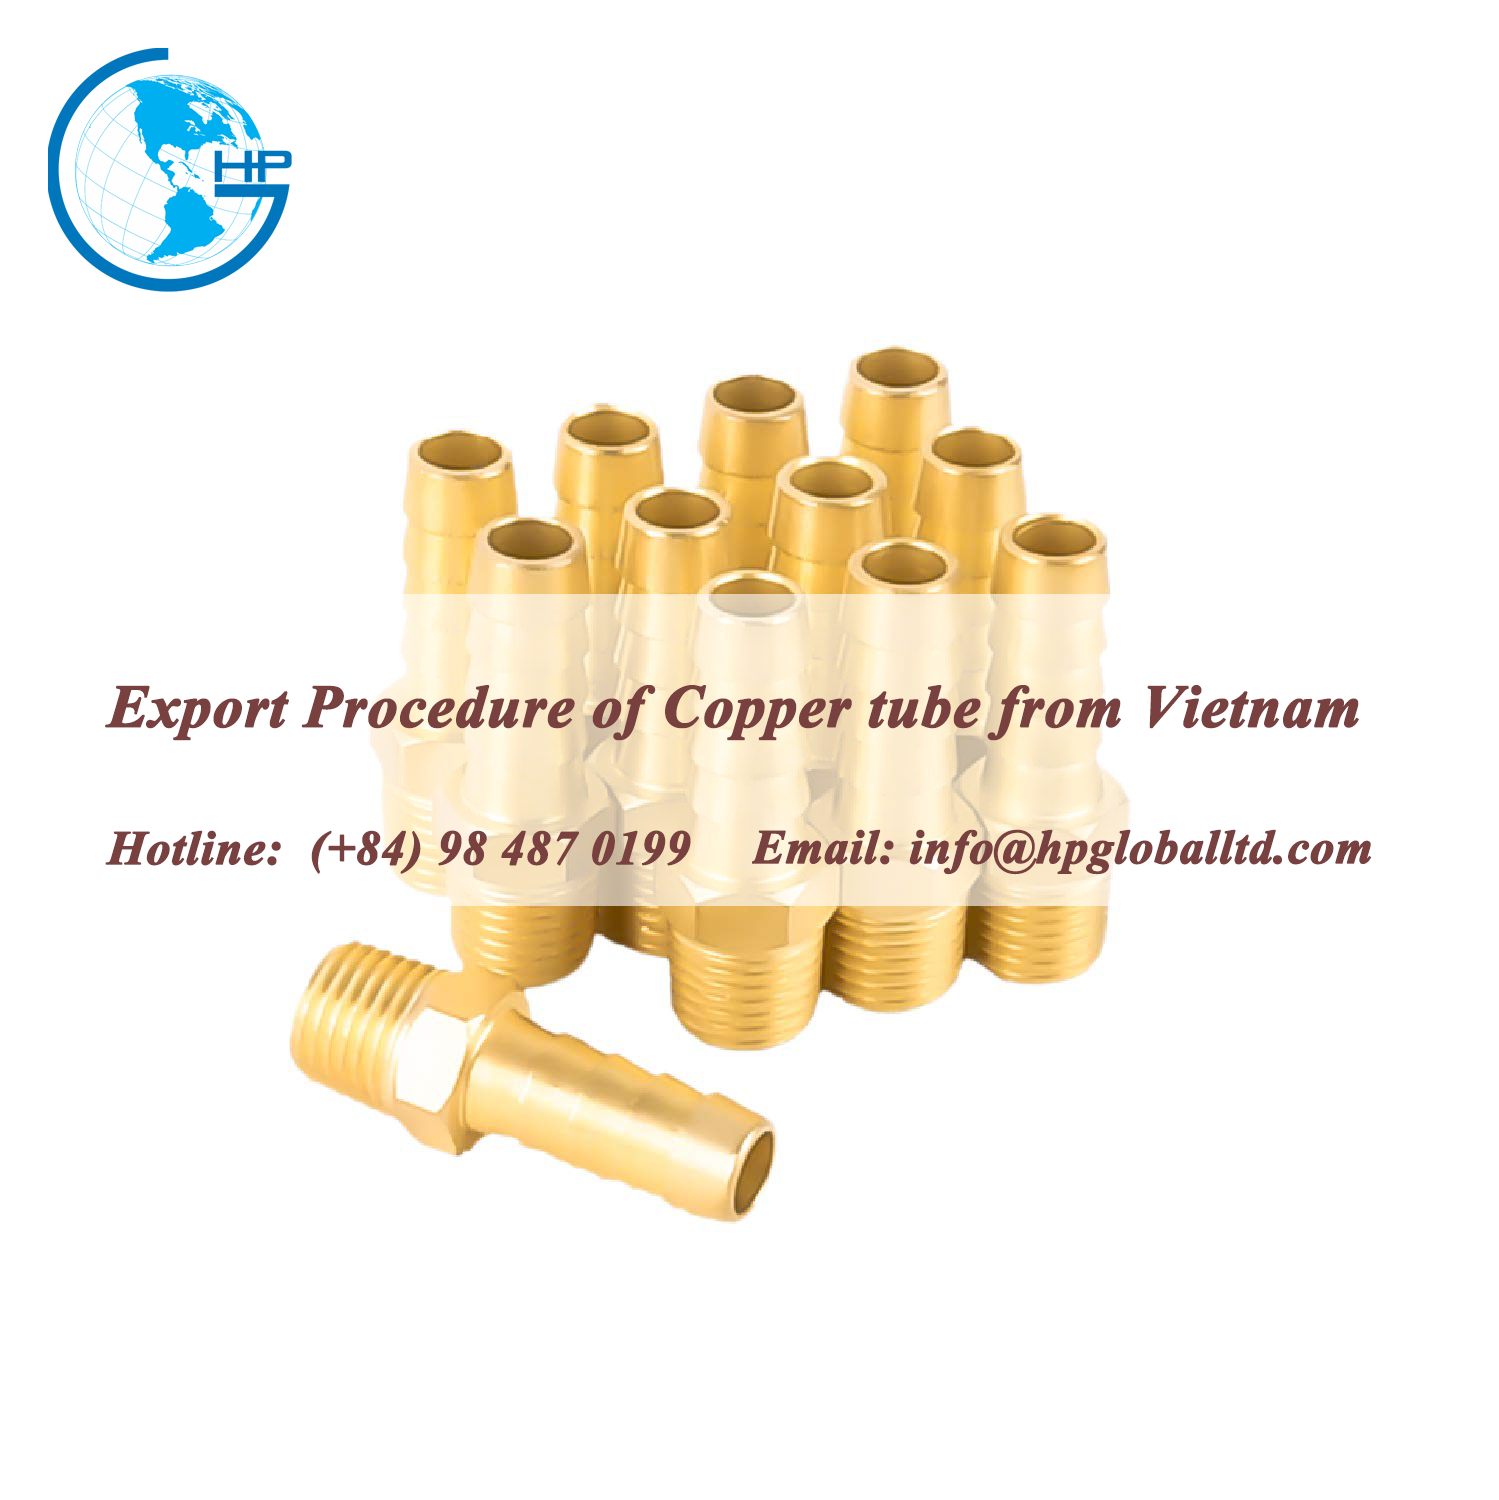 Export Procedure of Copper tube from Vietnam